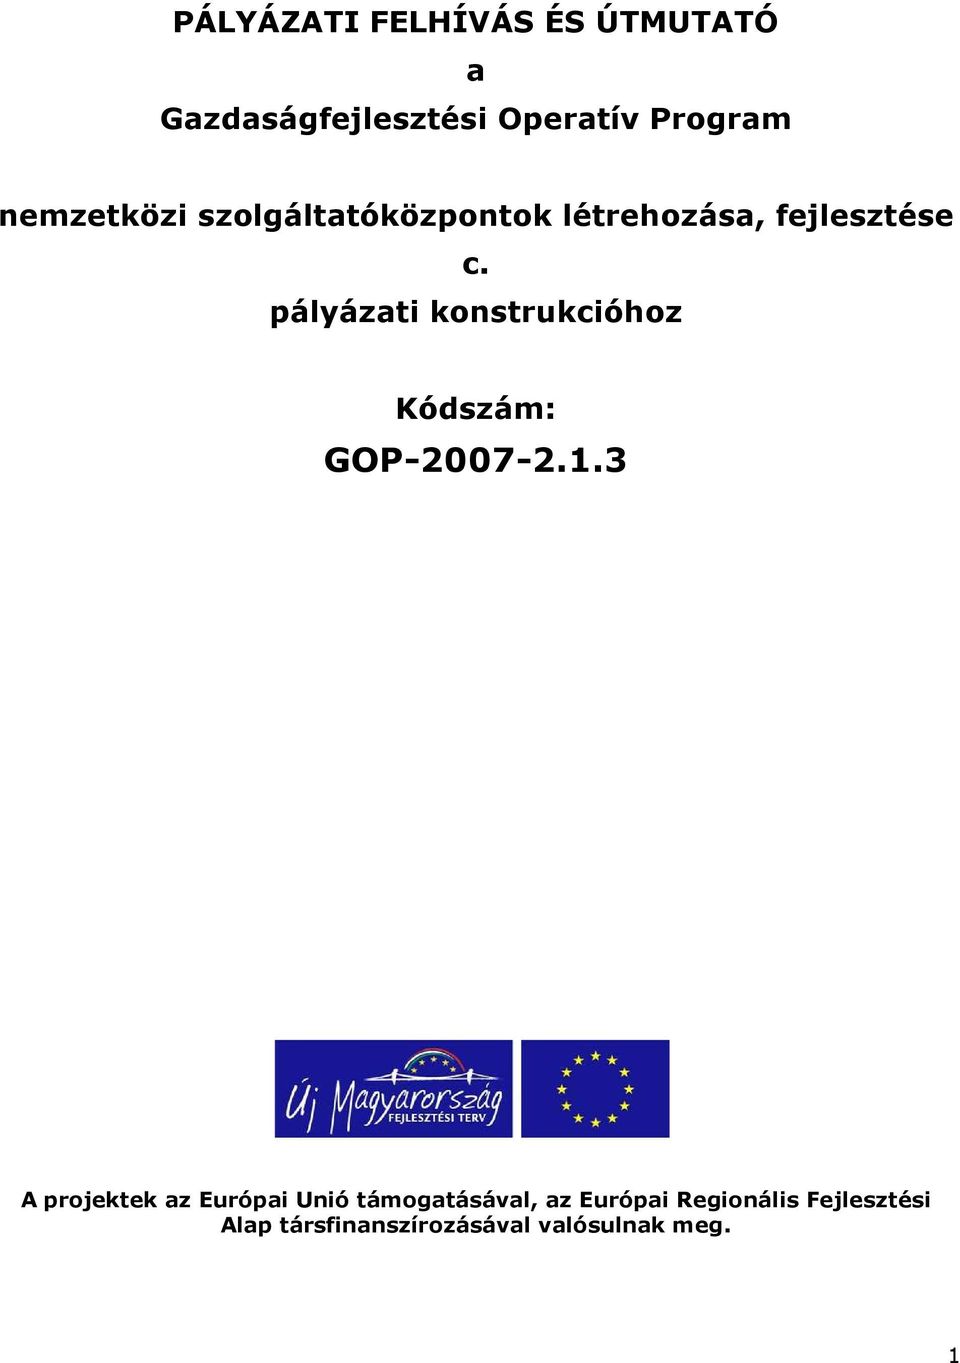 pályázati konstrukcióhoz Kódszám: GOP-2007-2.1.